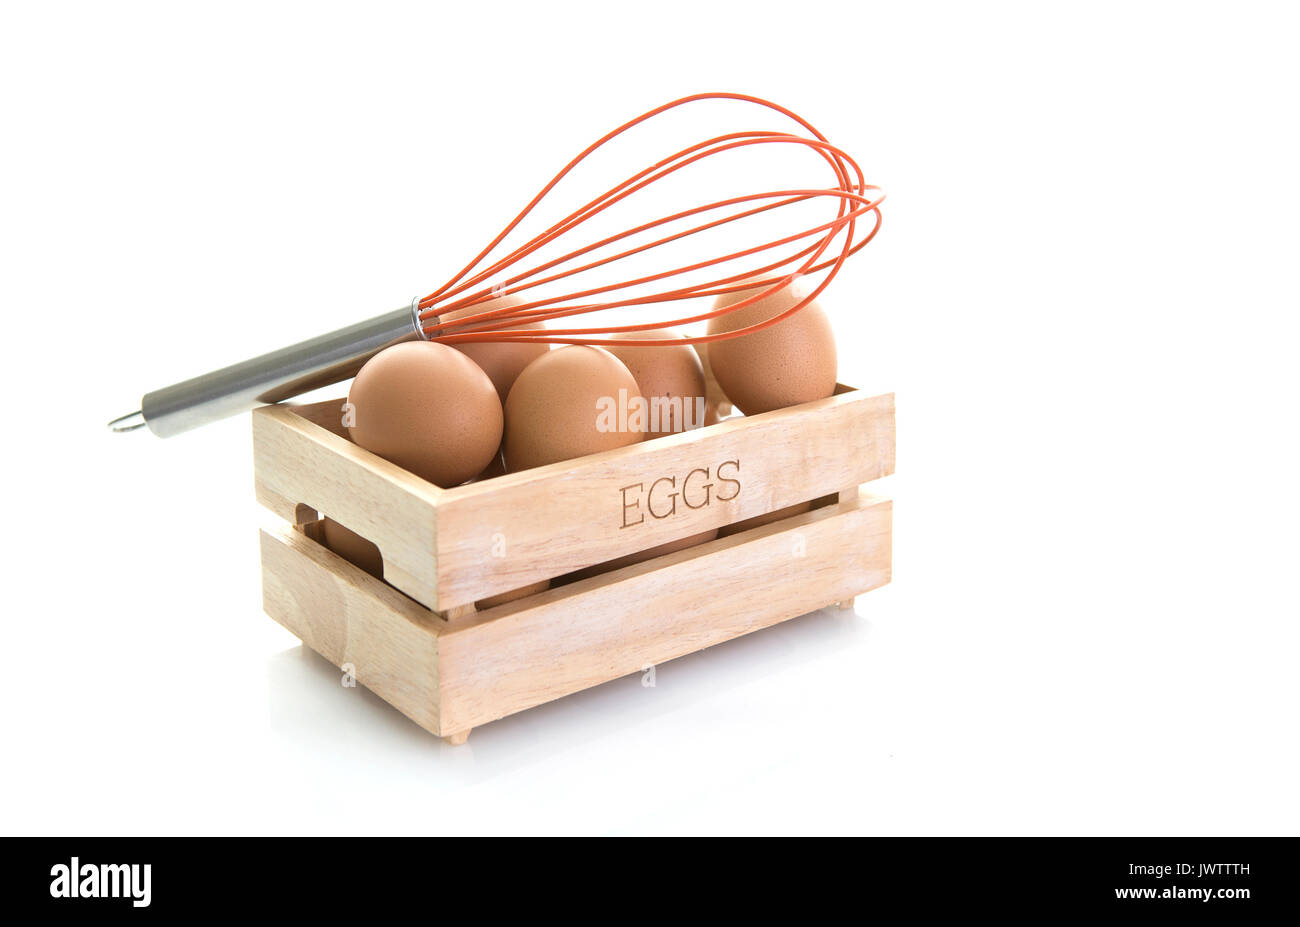 Los huevos en una caja de madera con batidor de huevos de color naranja sobre un fondo blanco. Foto de stock